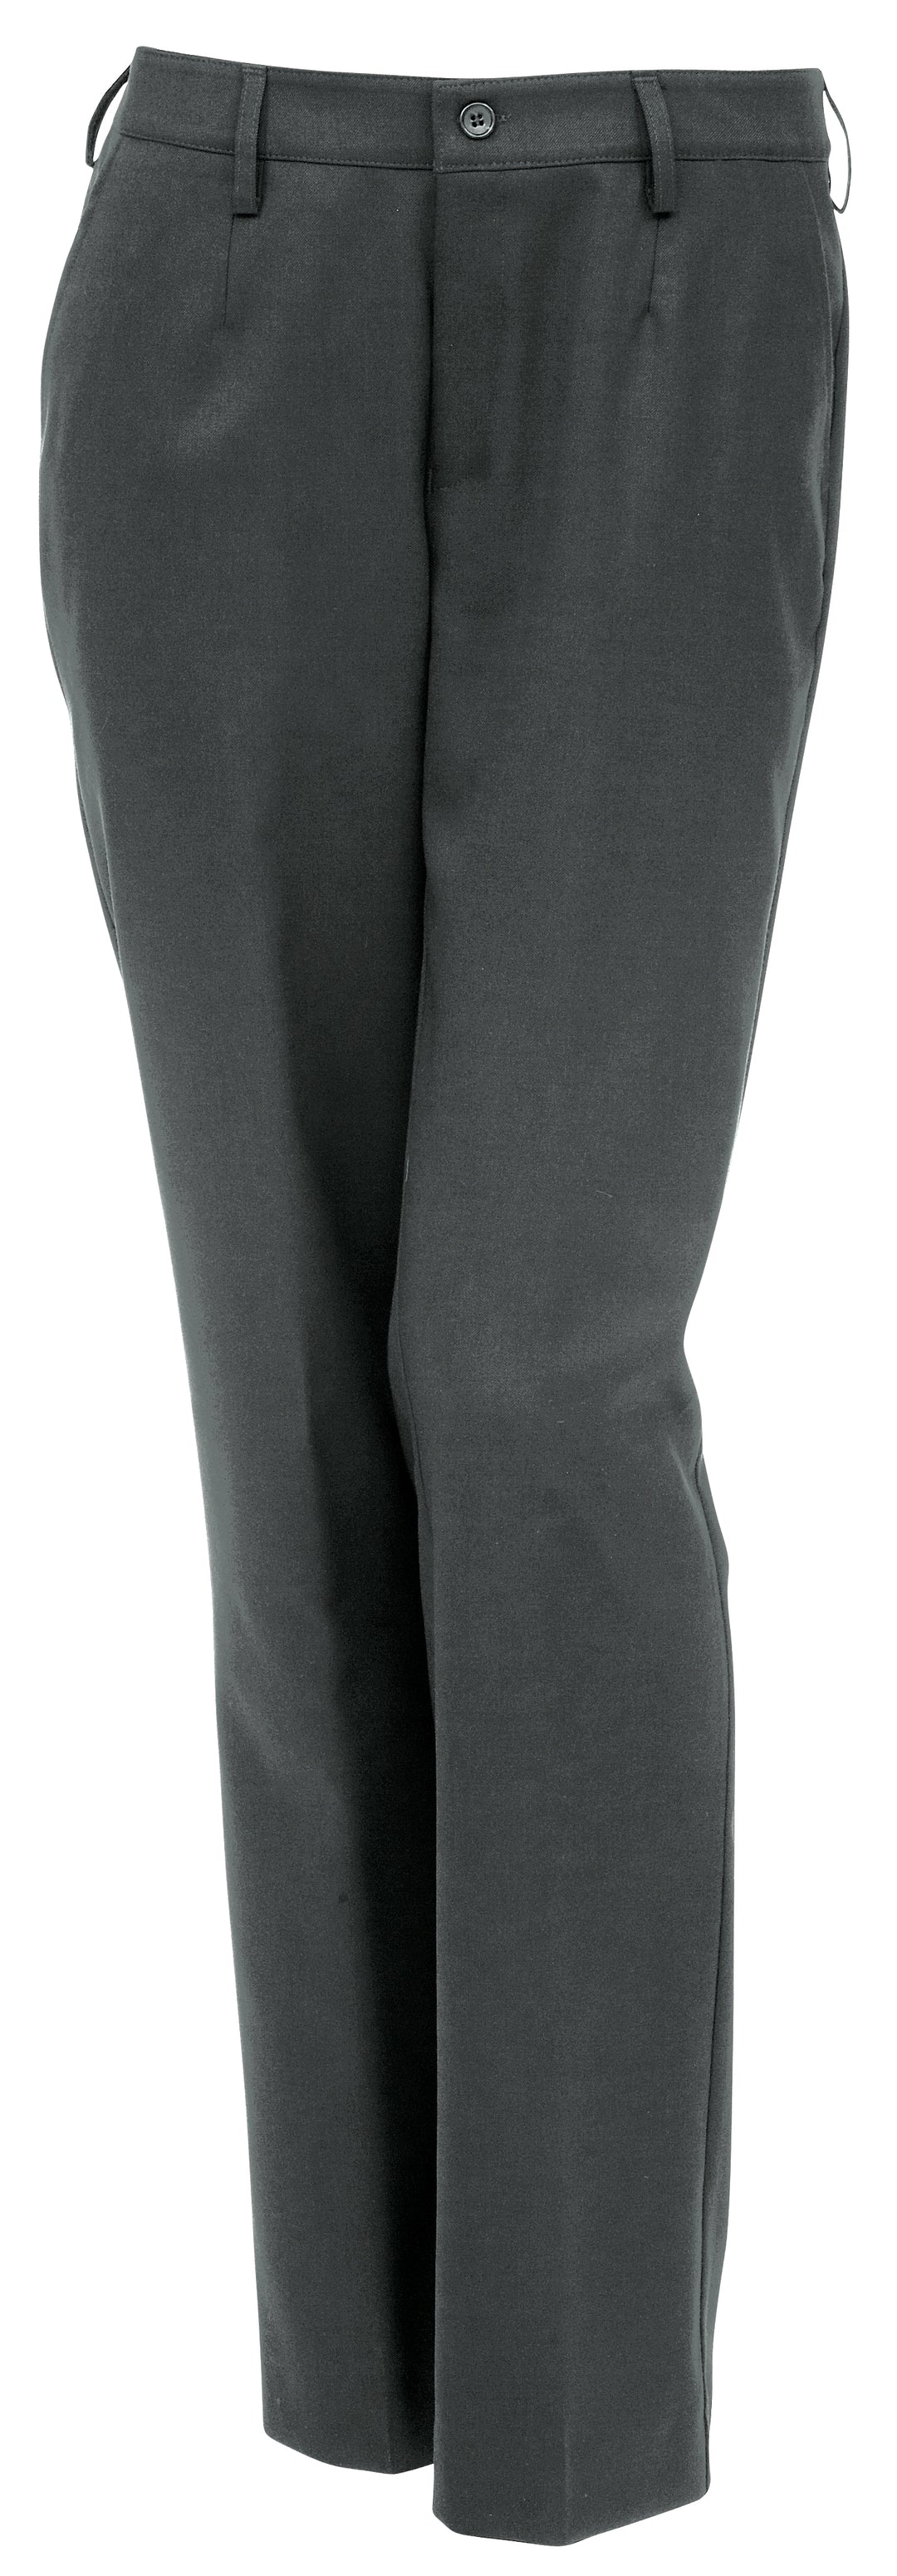 Ajattomat, tyylikkäät harmaat naisten housut joustavaa ja kestävää villasekoitetta. Housuissa vyönlenkit, sivutaskut ja polvisilkit. Koot: C32 - C52